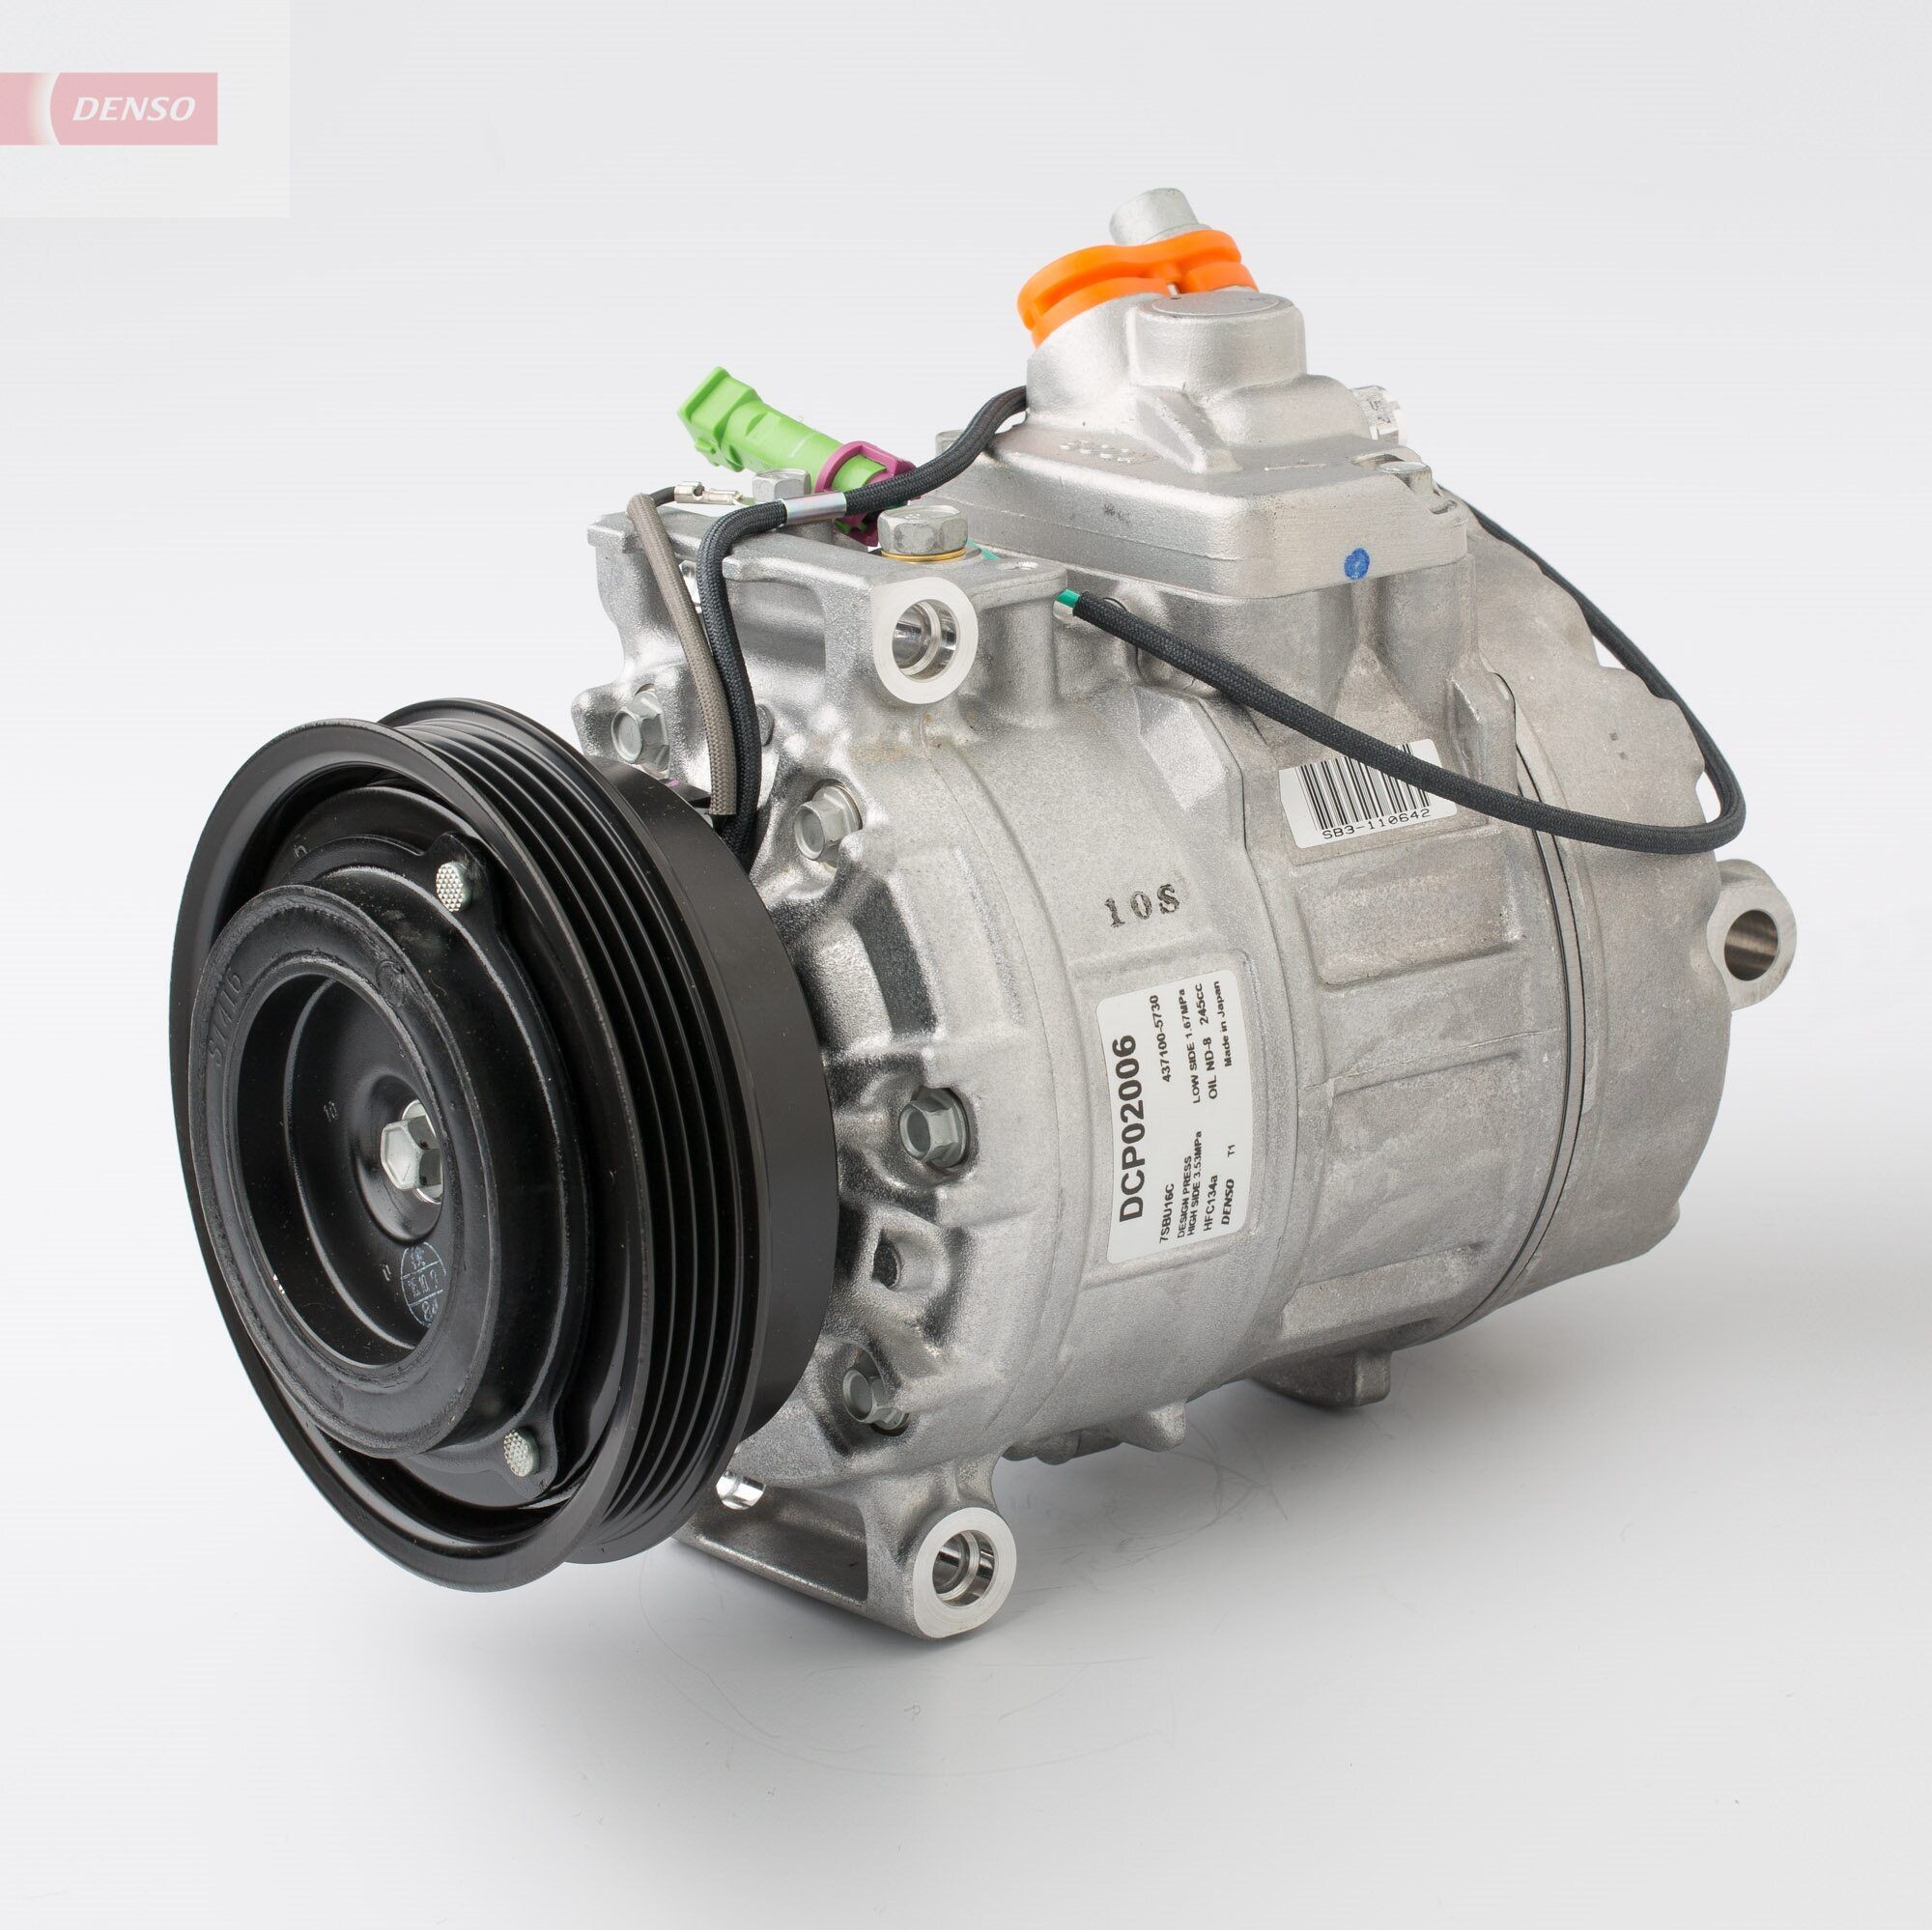 DENSO DCP02006 Compresor de aire acondicionado 7SBU16C, 12V, PAG 46, R 134 a Volkswagen de calidad originales